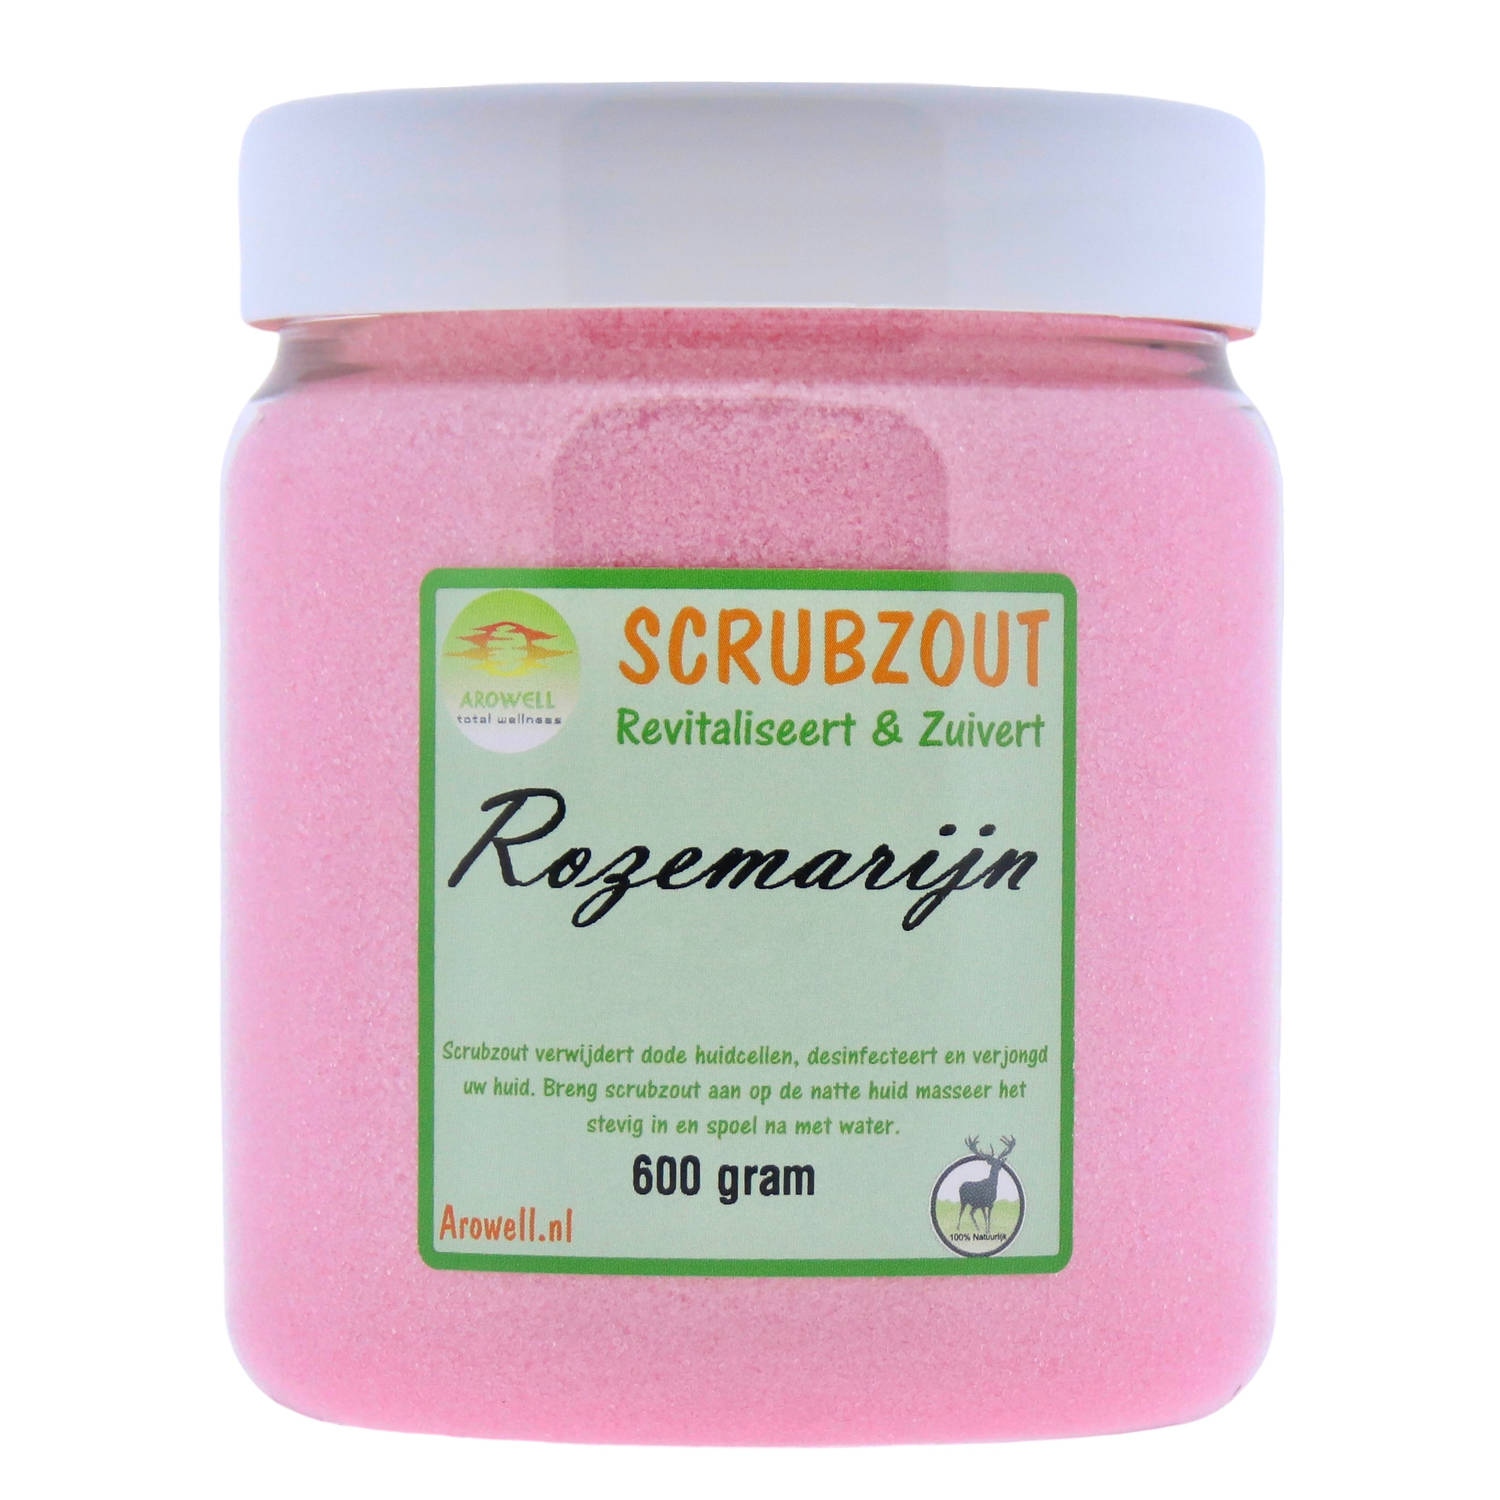 Arowell - Rozemarijn Body Scrub Scrubzout 600 gram